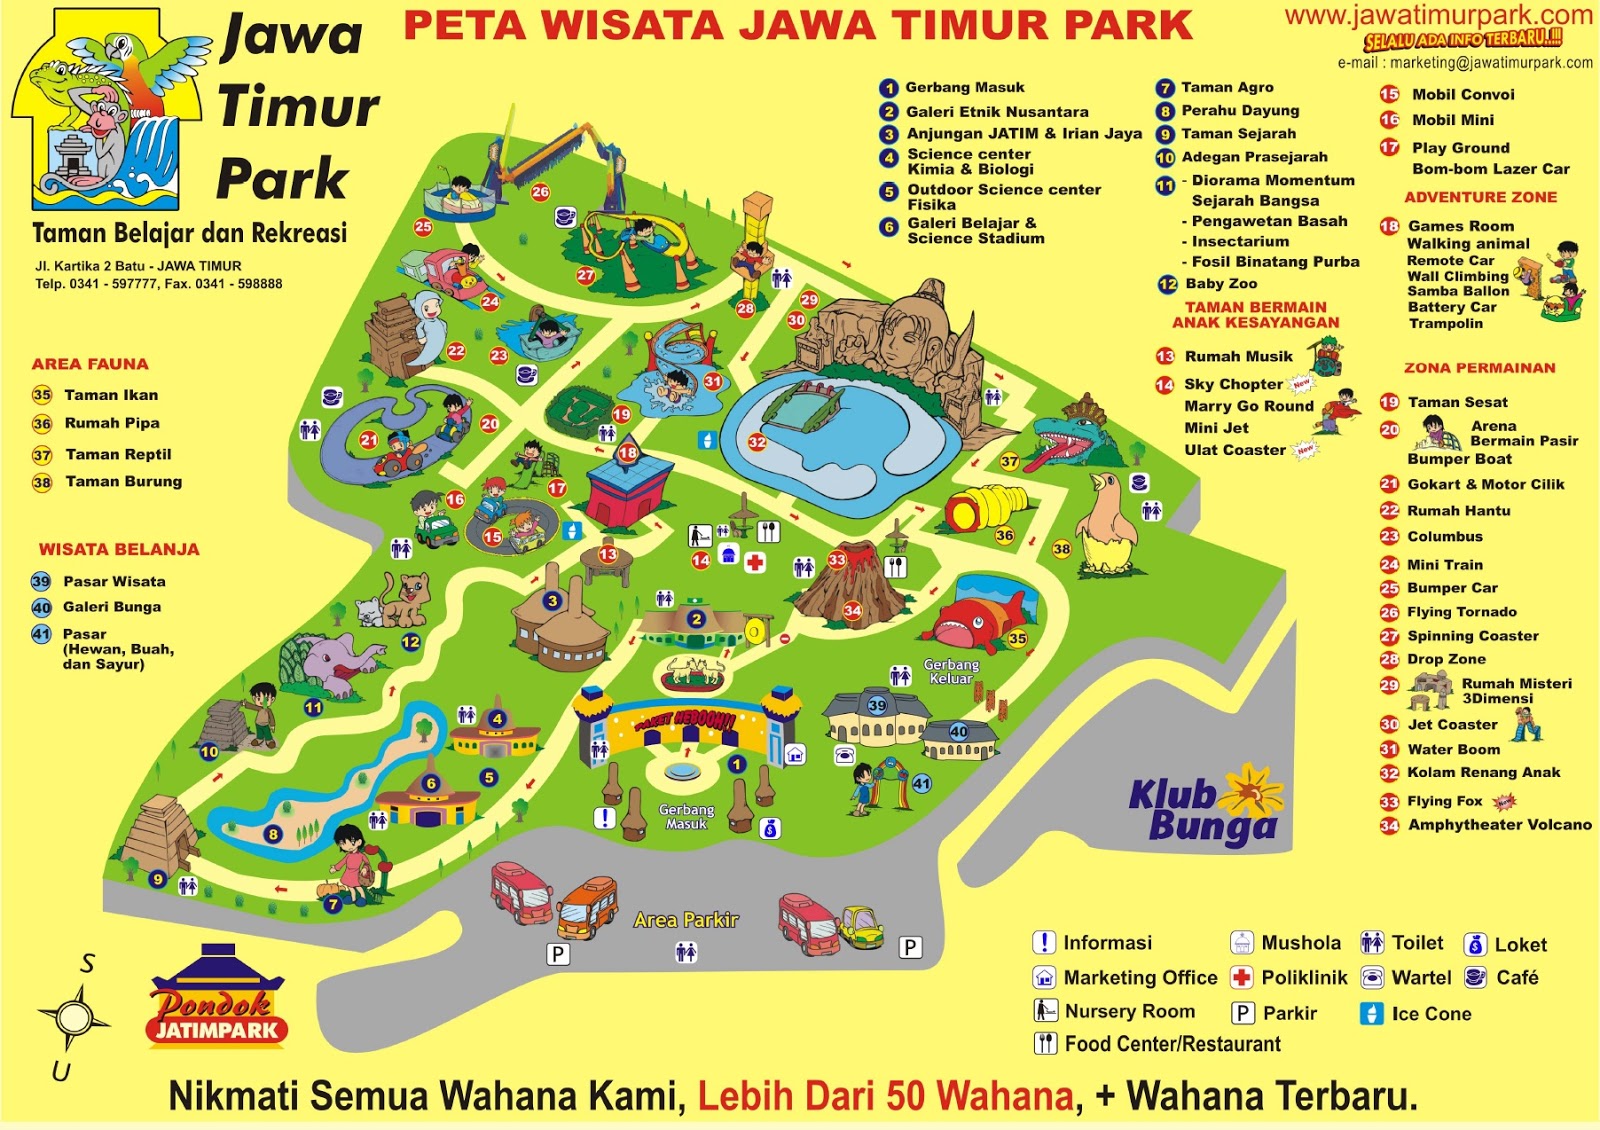 TAKJUB INDONESIA JAWA TIMUR PARK 1, BATU